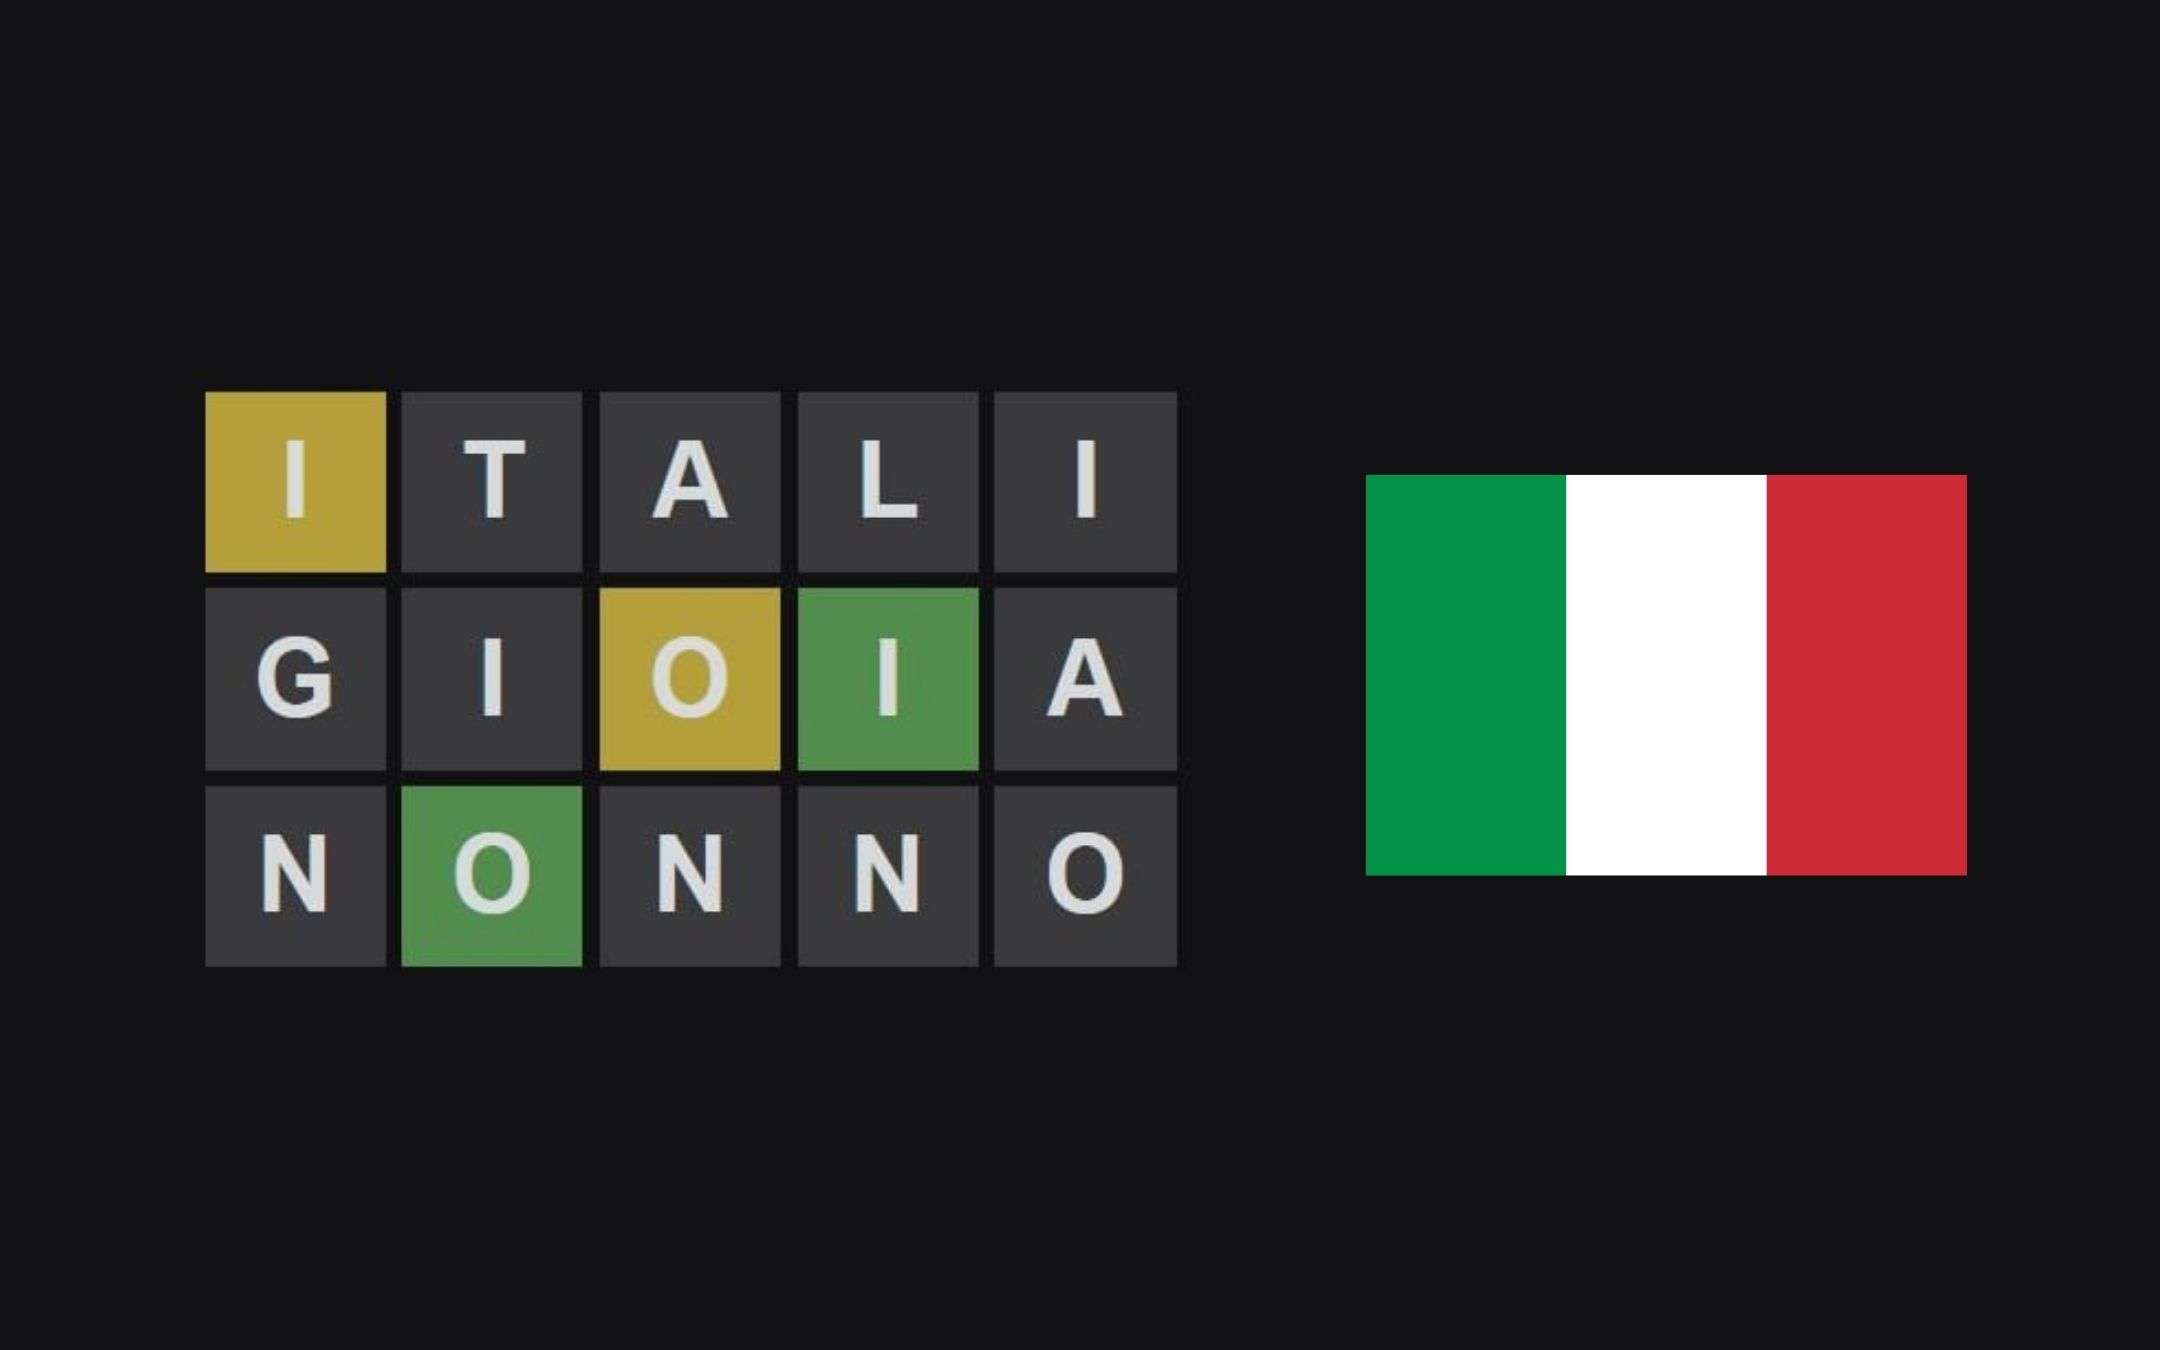 Come giocare a Wordle in italiano? Ecco una valida alternativa!